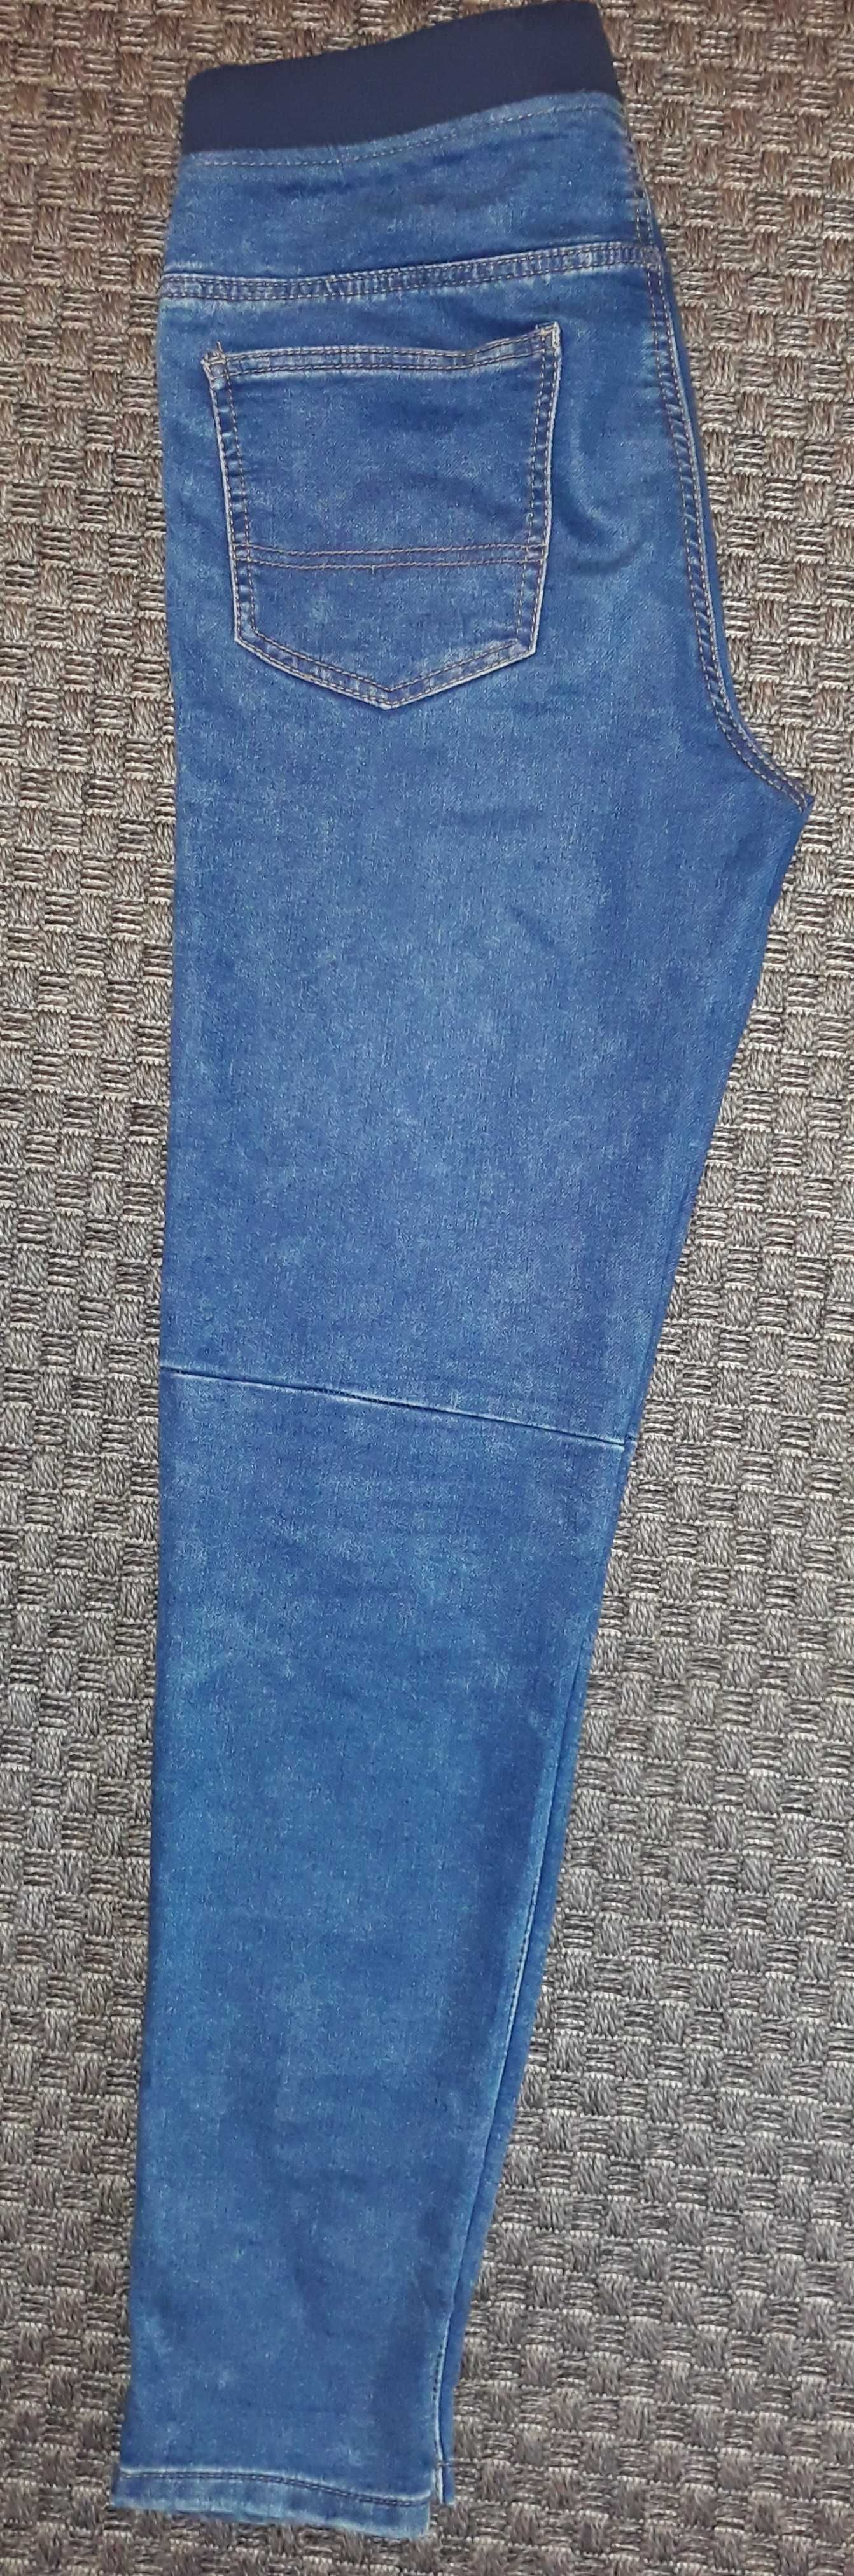 Spodnie chłopięce bawełniane na gumce rozmiar 170 cm.